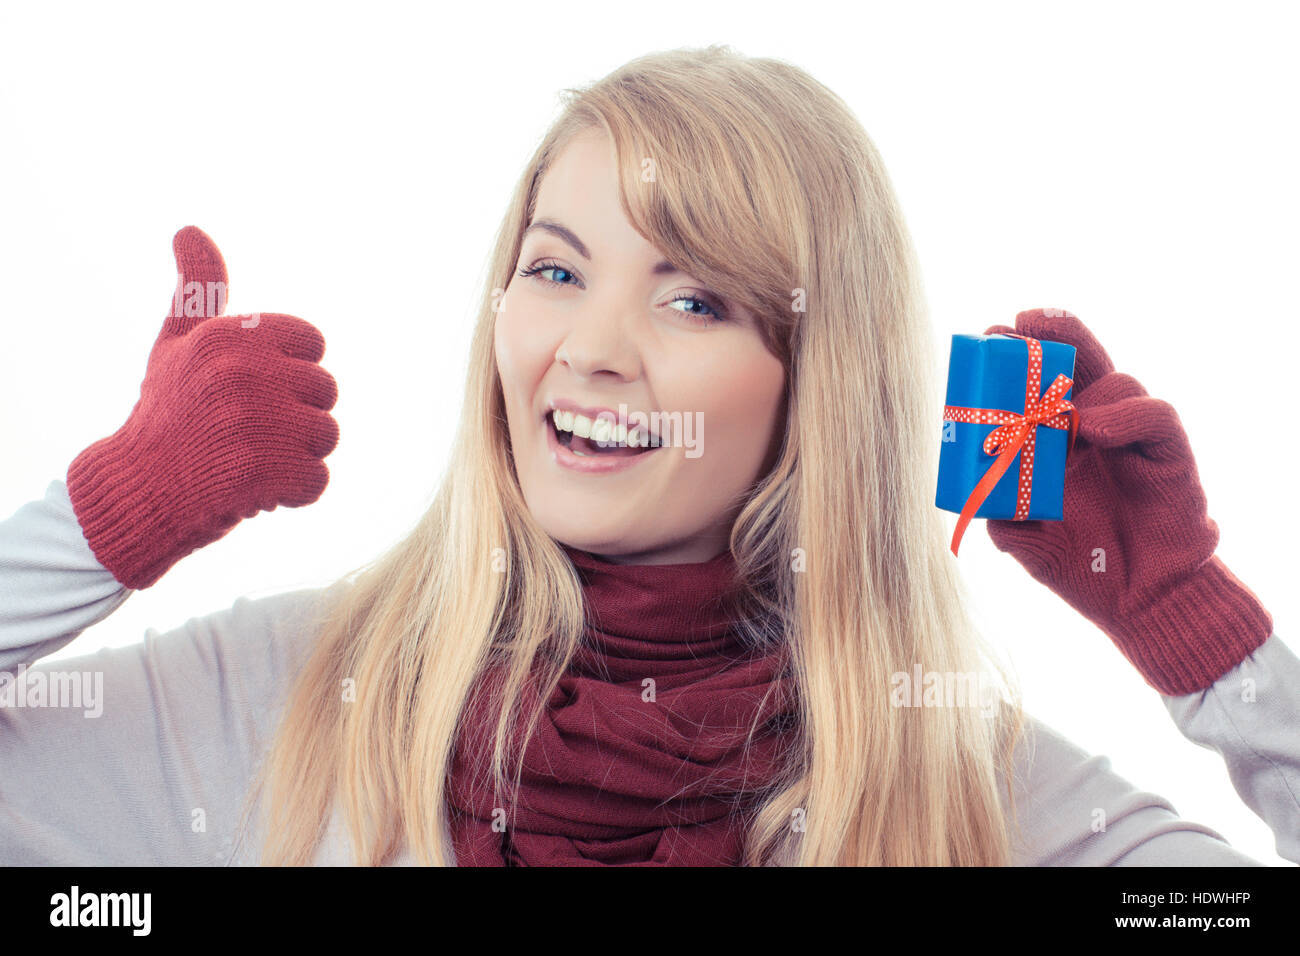 Foto d'epoca, donna sorridente in guanti holding avvolto regalo per Natale o altra celebrazione e mostrando pollice su sfondo bianco Foto Stock